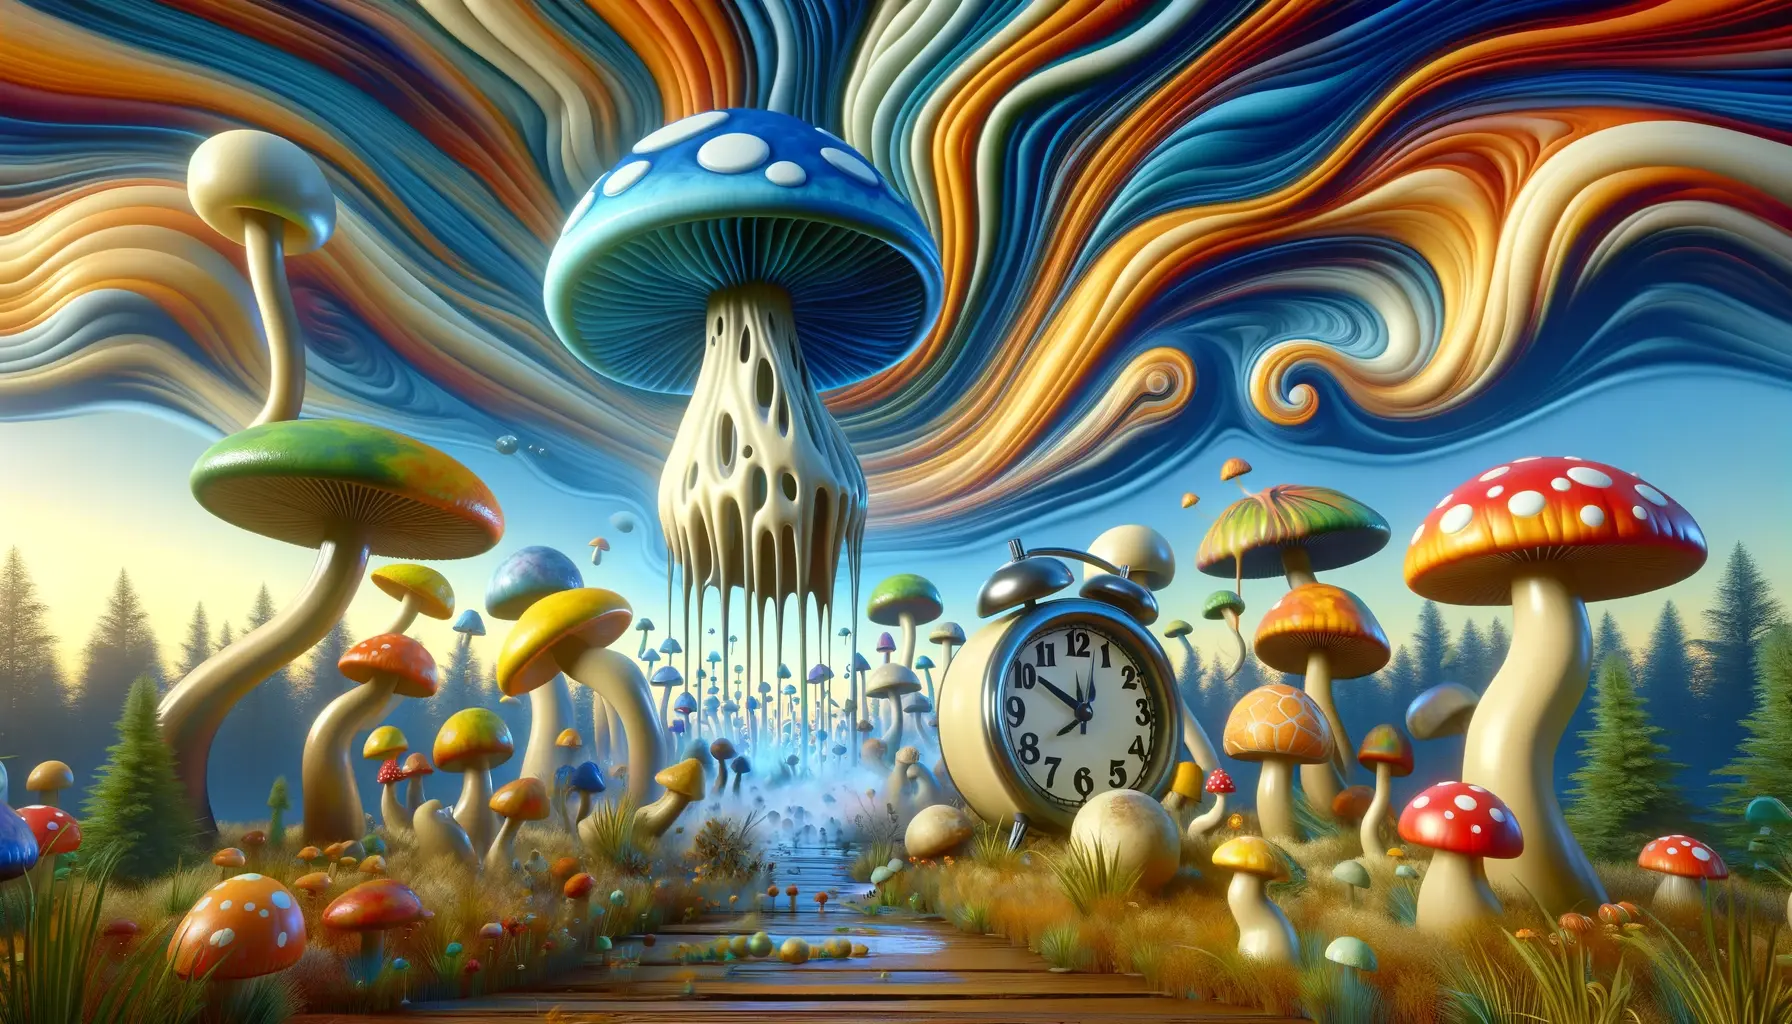 How long magic mushrooms last